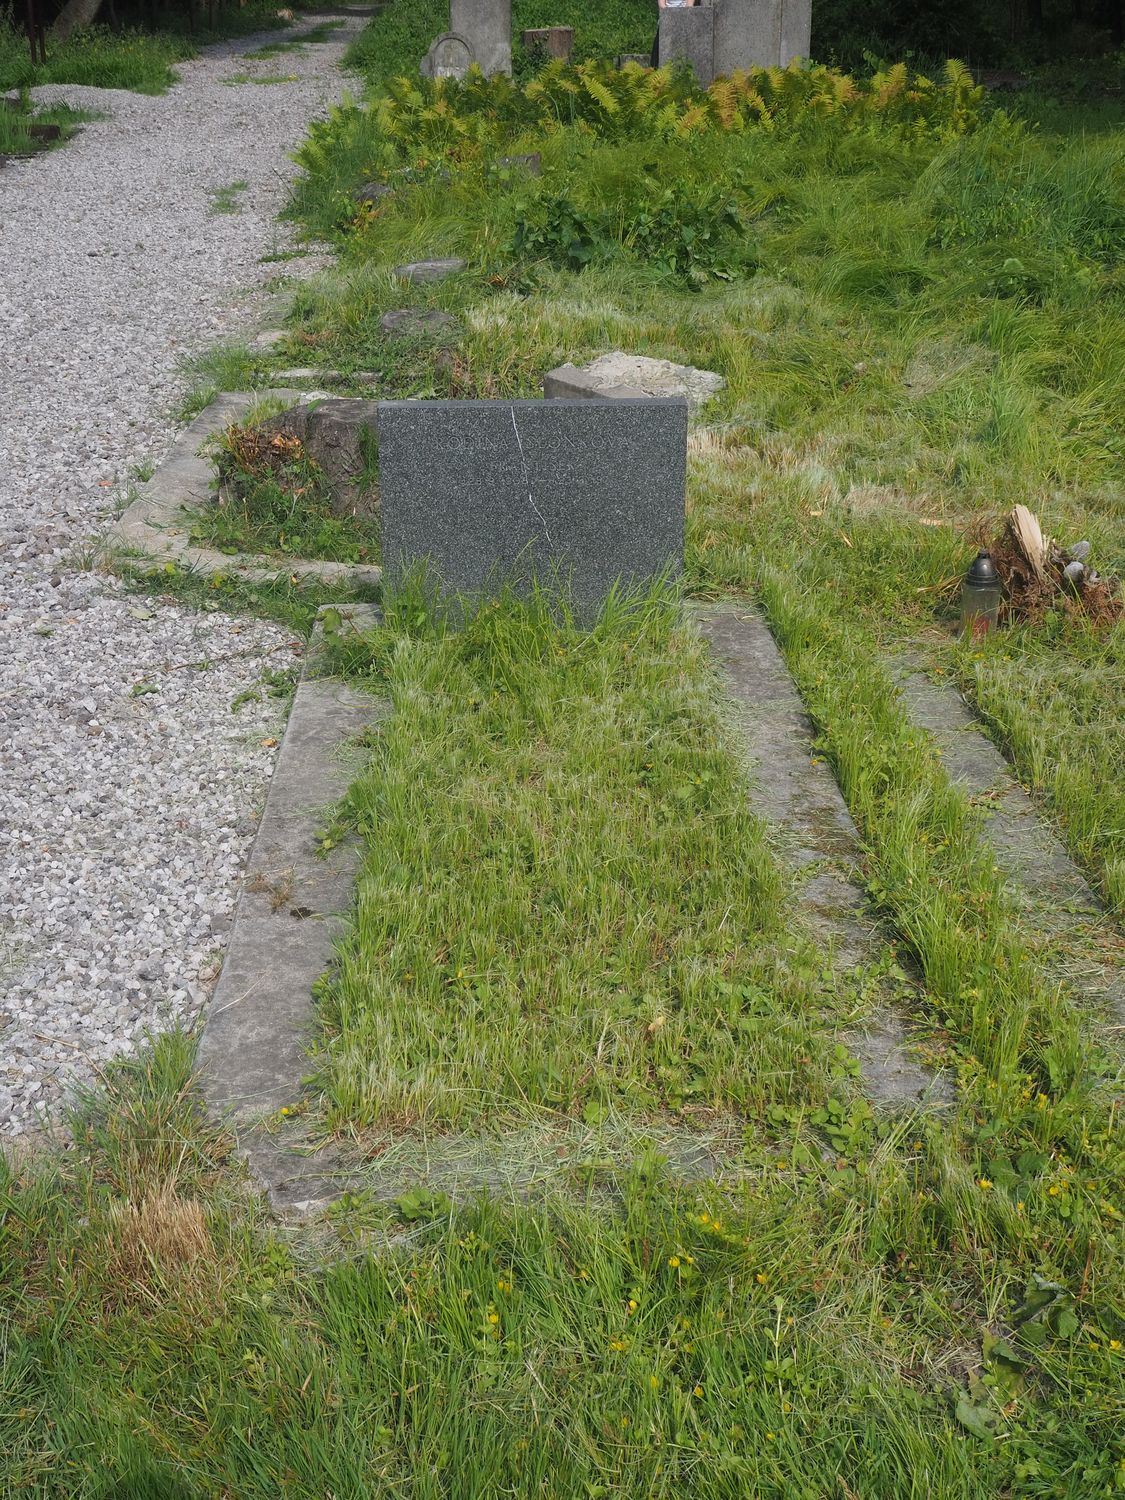 Tombstone of the Solonkov family, Karviná Mexico cemetery, as of 2022.